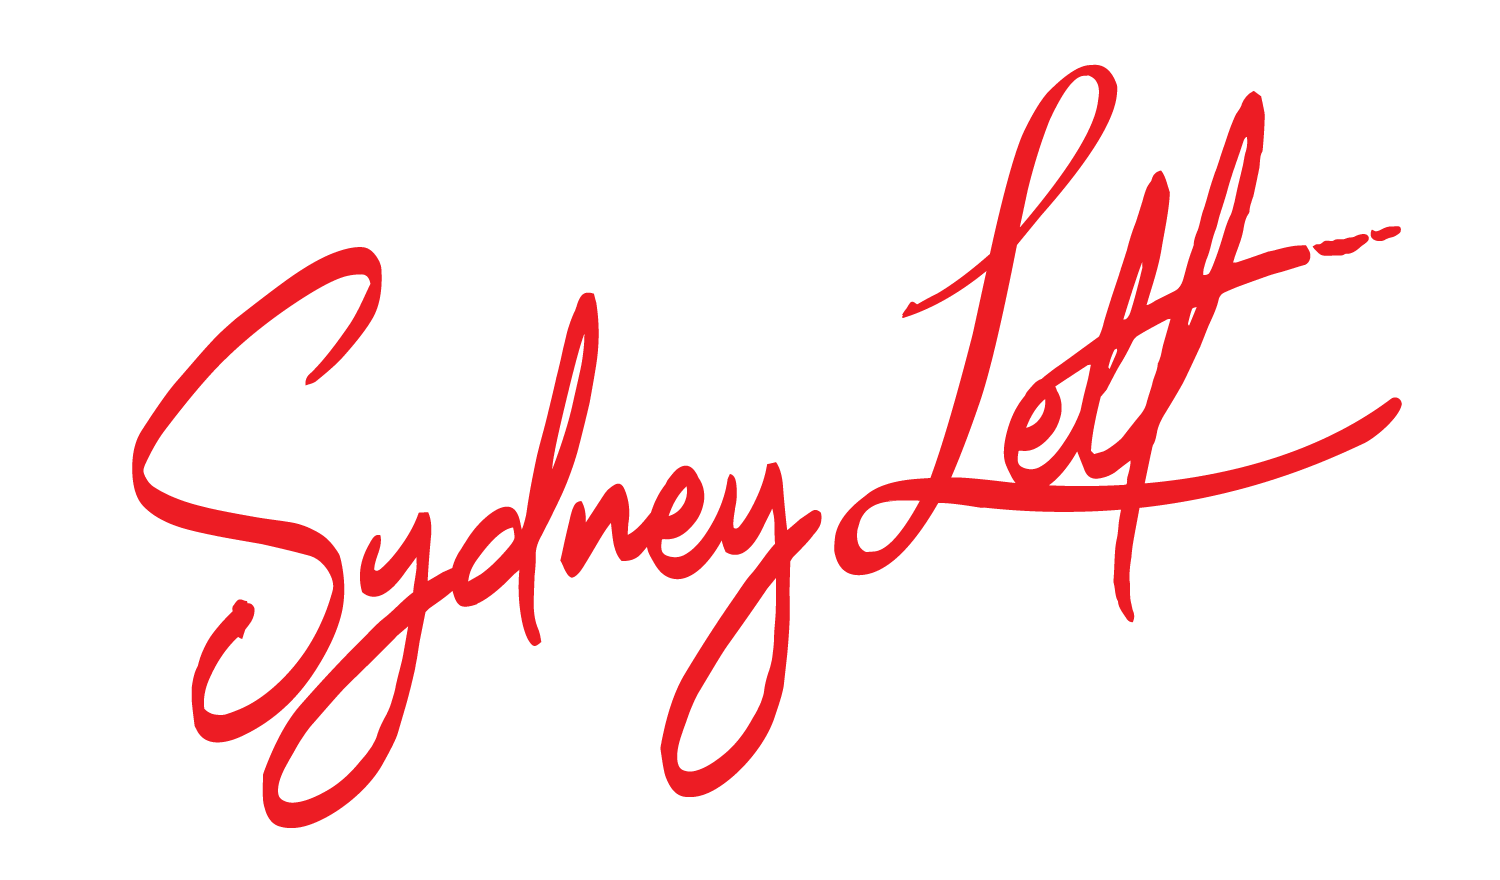 Sydney Lett